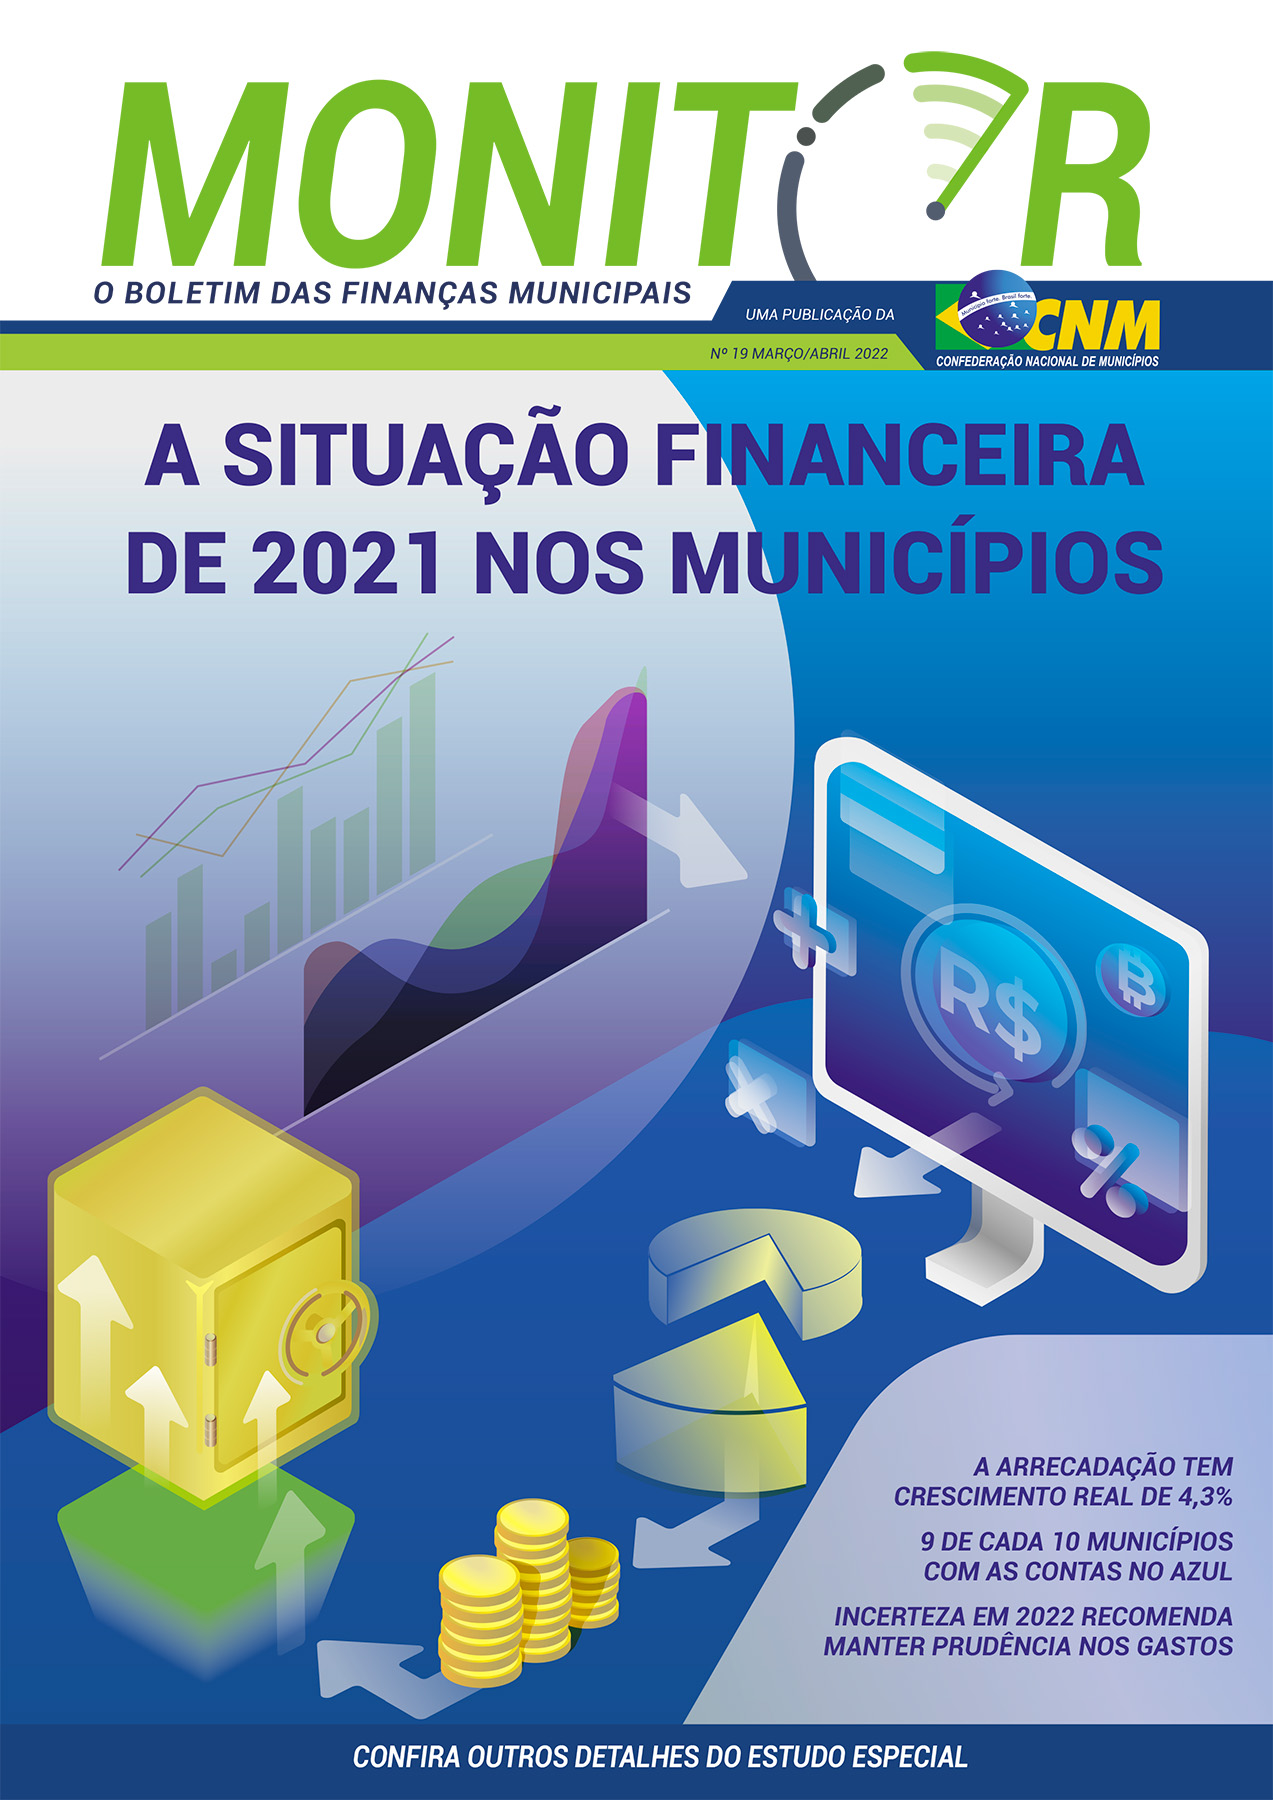 Monitor traz o balano das finanas municipais em 2021